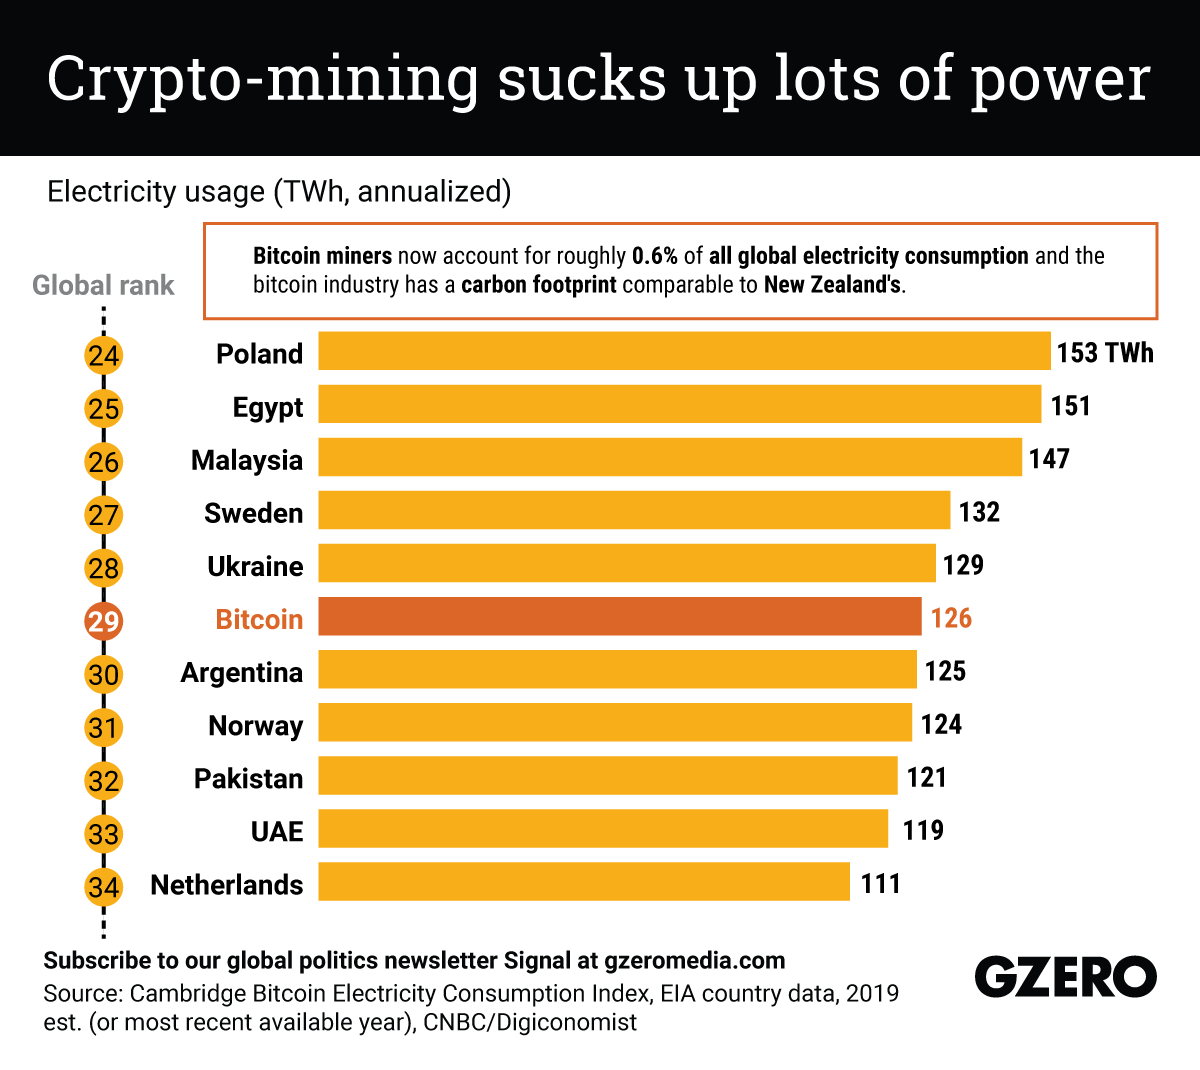 Is Bitcoin Mining Profitable?